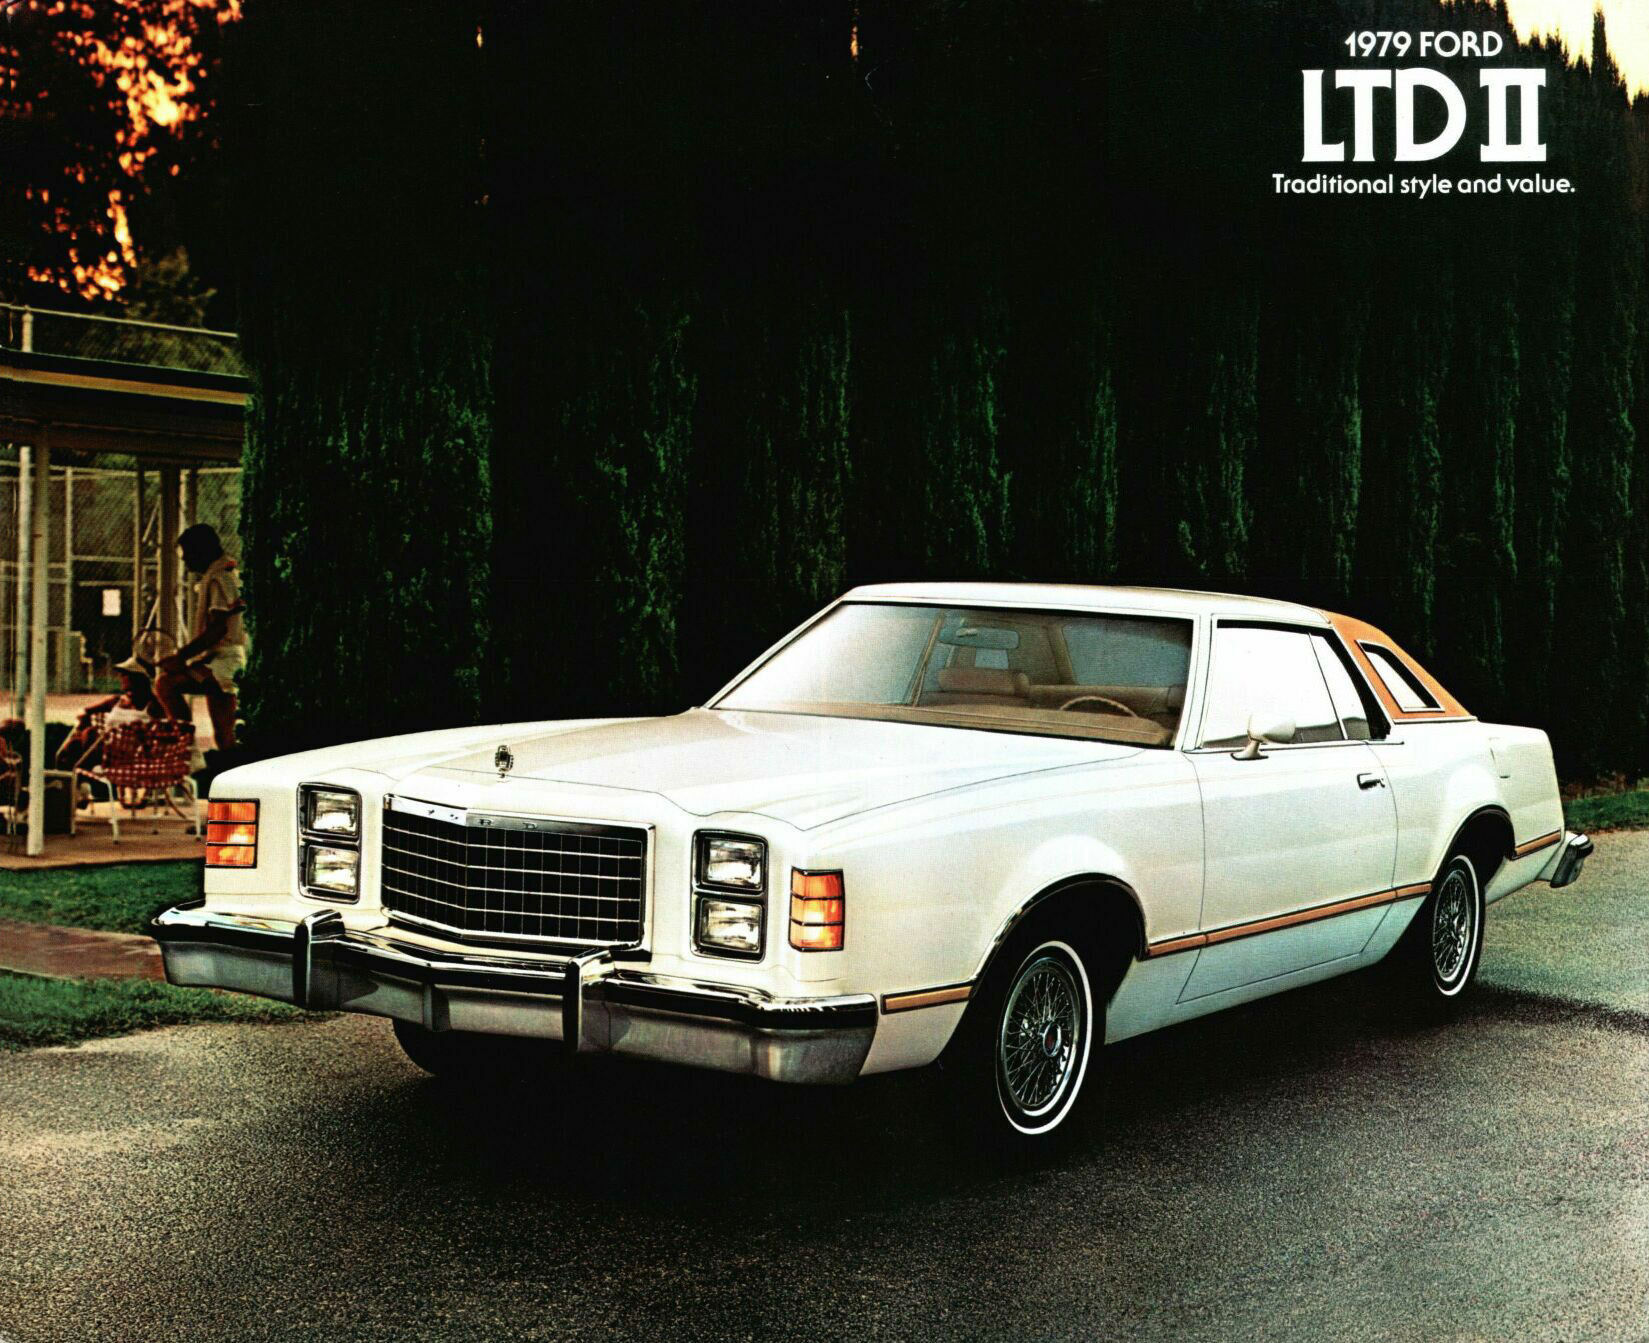 1979 Ford LTD II-01